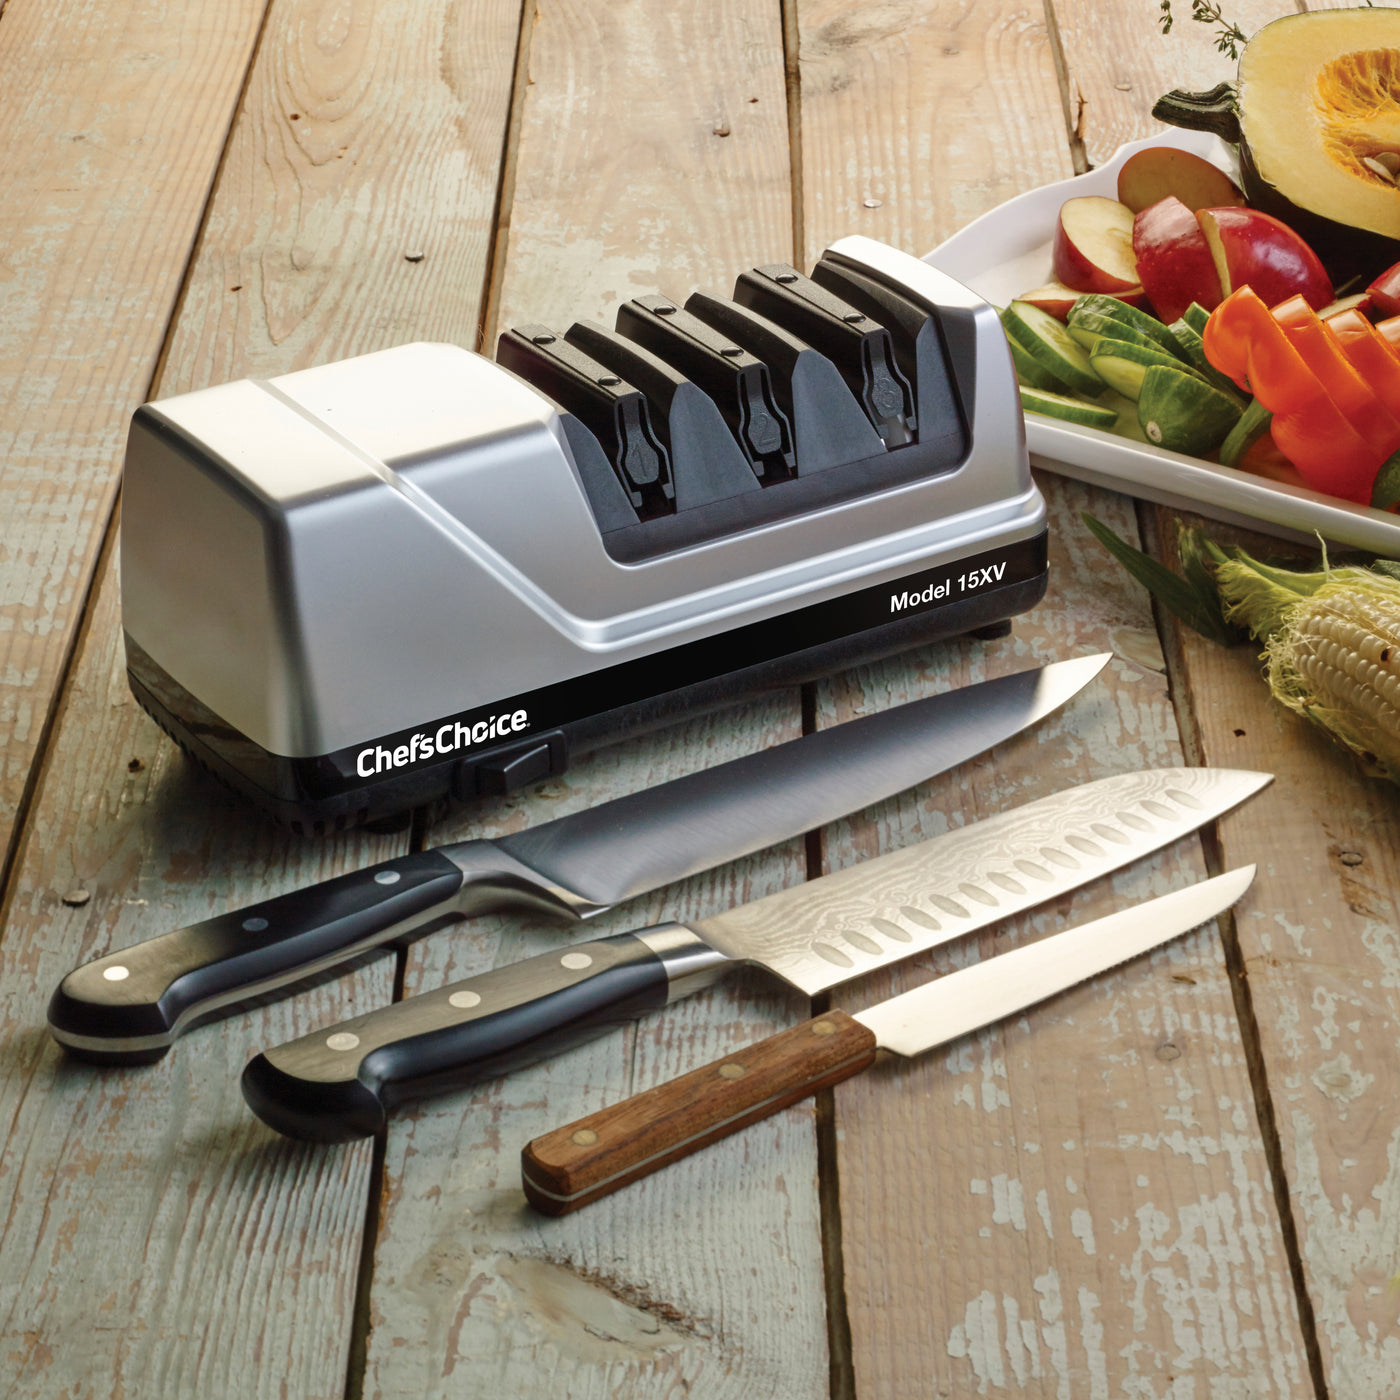 Afilador de cuchillos eléctrico profesional Chef'sChoice 15XV Paquete 4 pzas